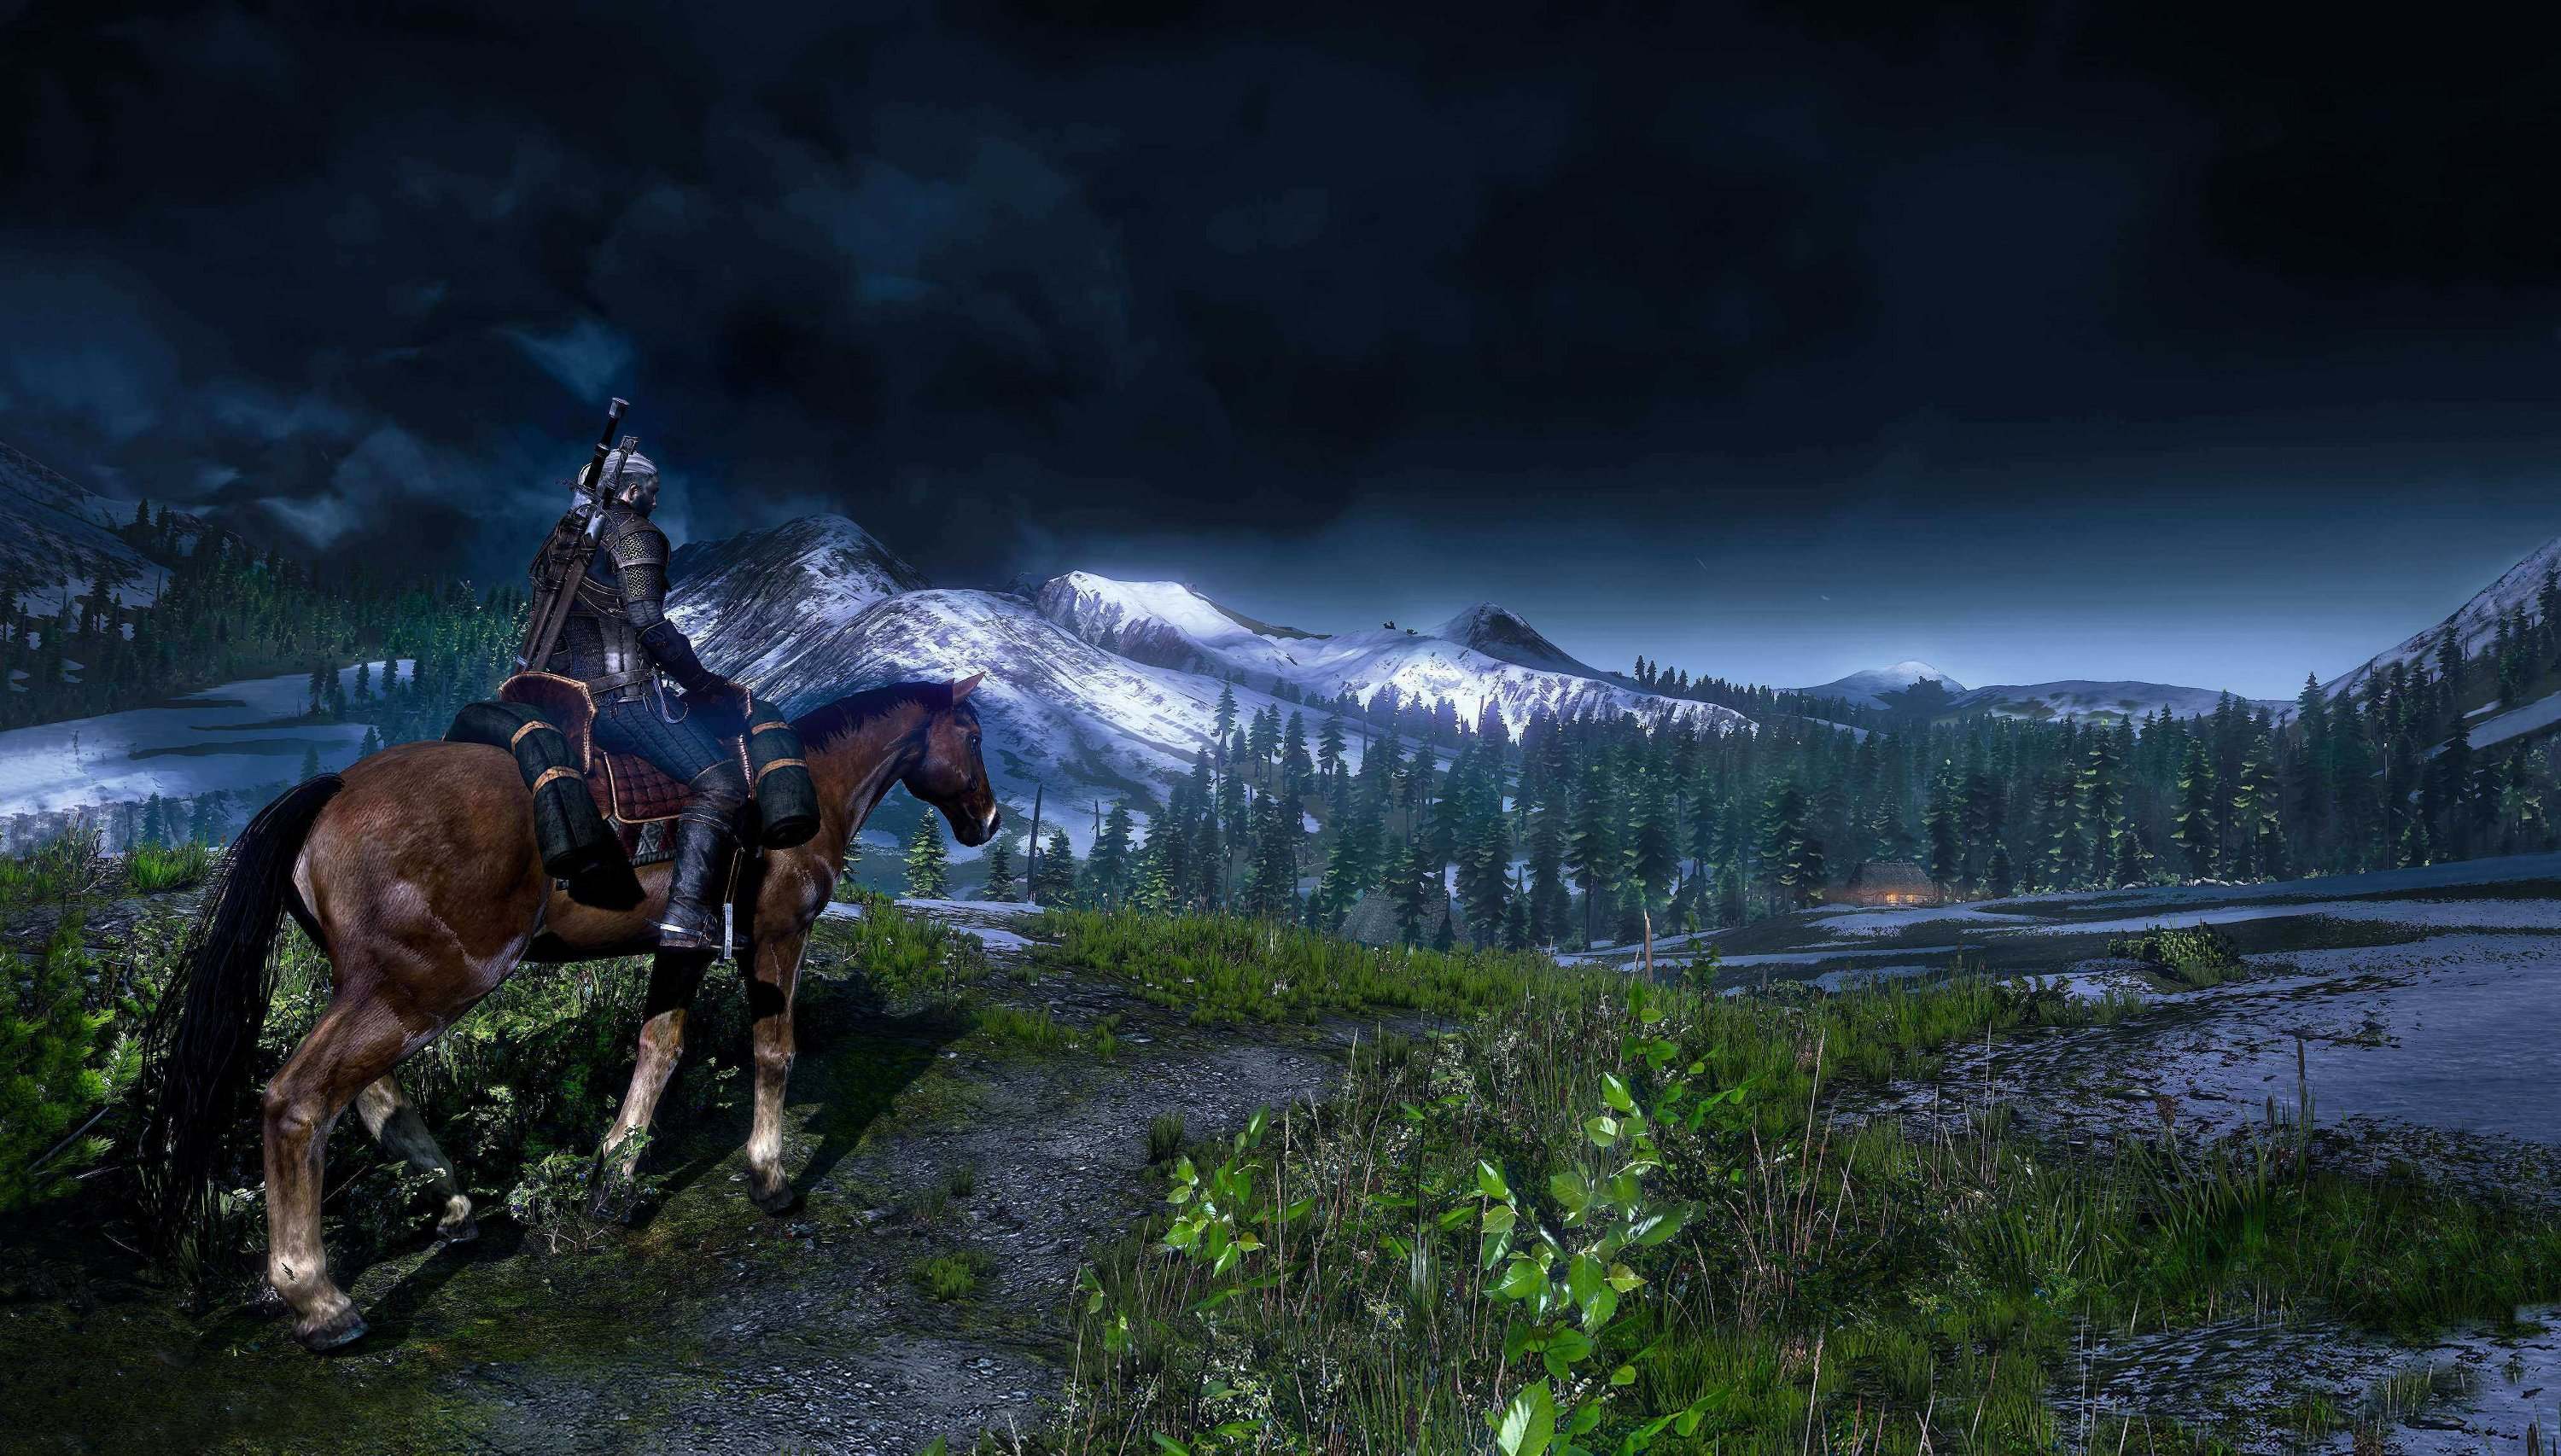 Immagine pubblicata in relazione al seguente contenuto: Guarda gli screenshots del game RPG The Witcher 3: Wild Hunt | Nome immagine: news19346_the-witcher-3-wild-hunt-screenshot_2.jpg